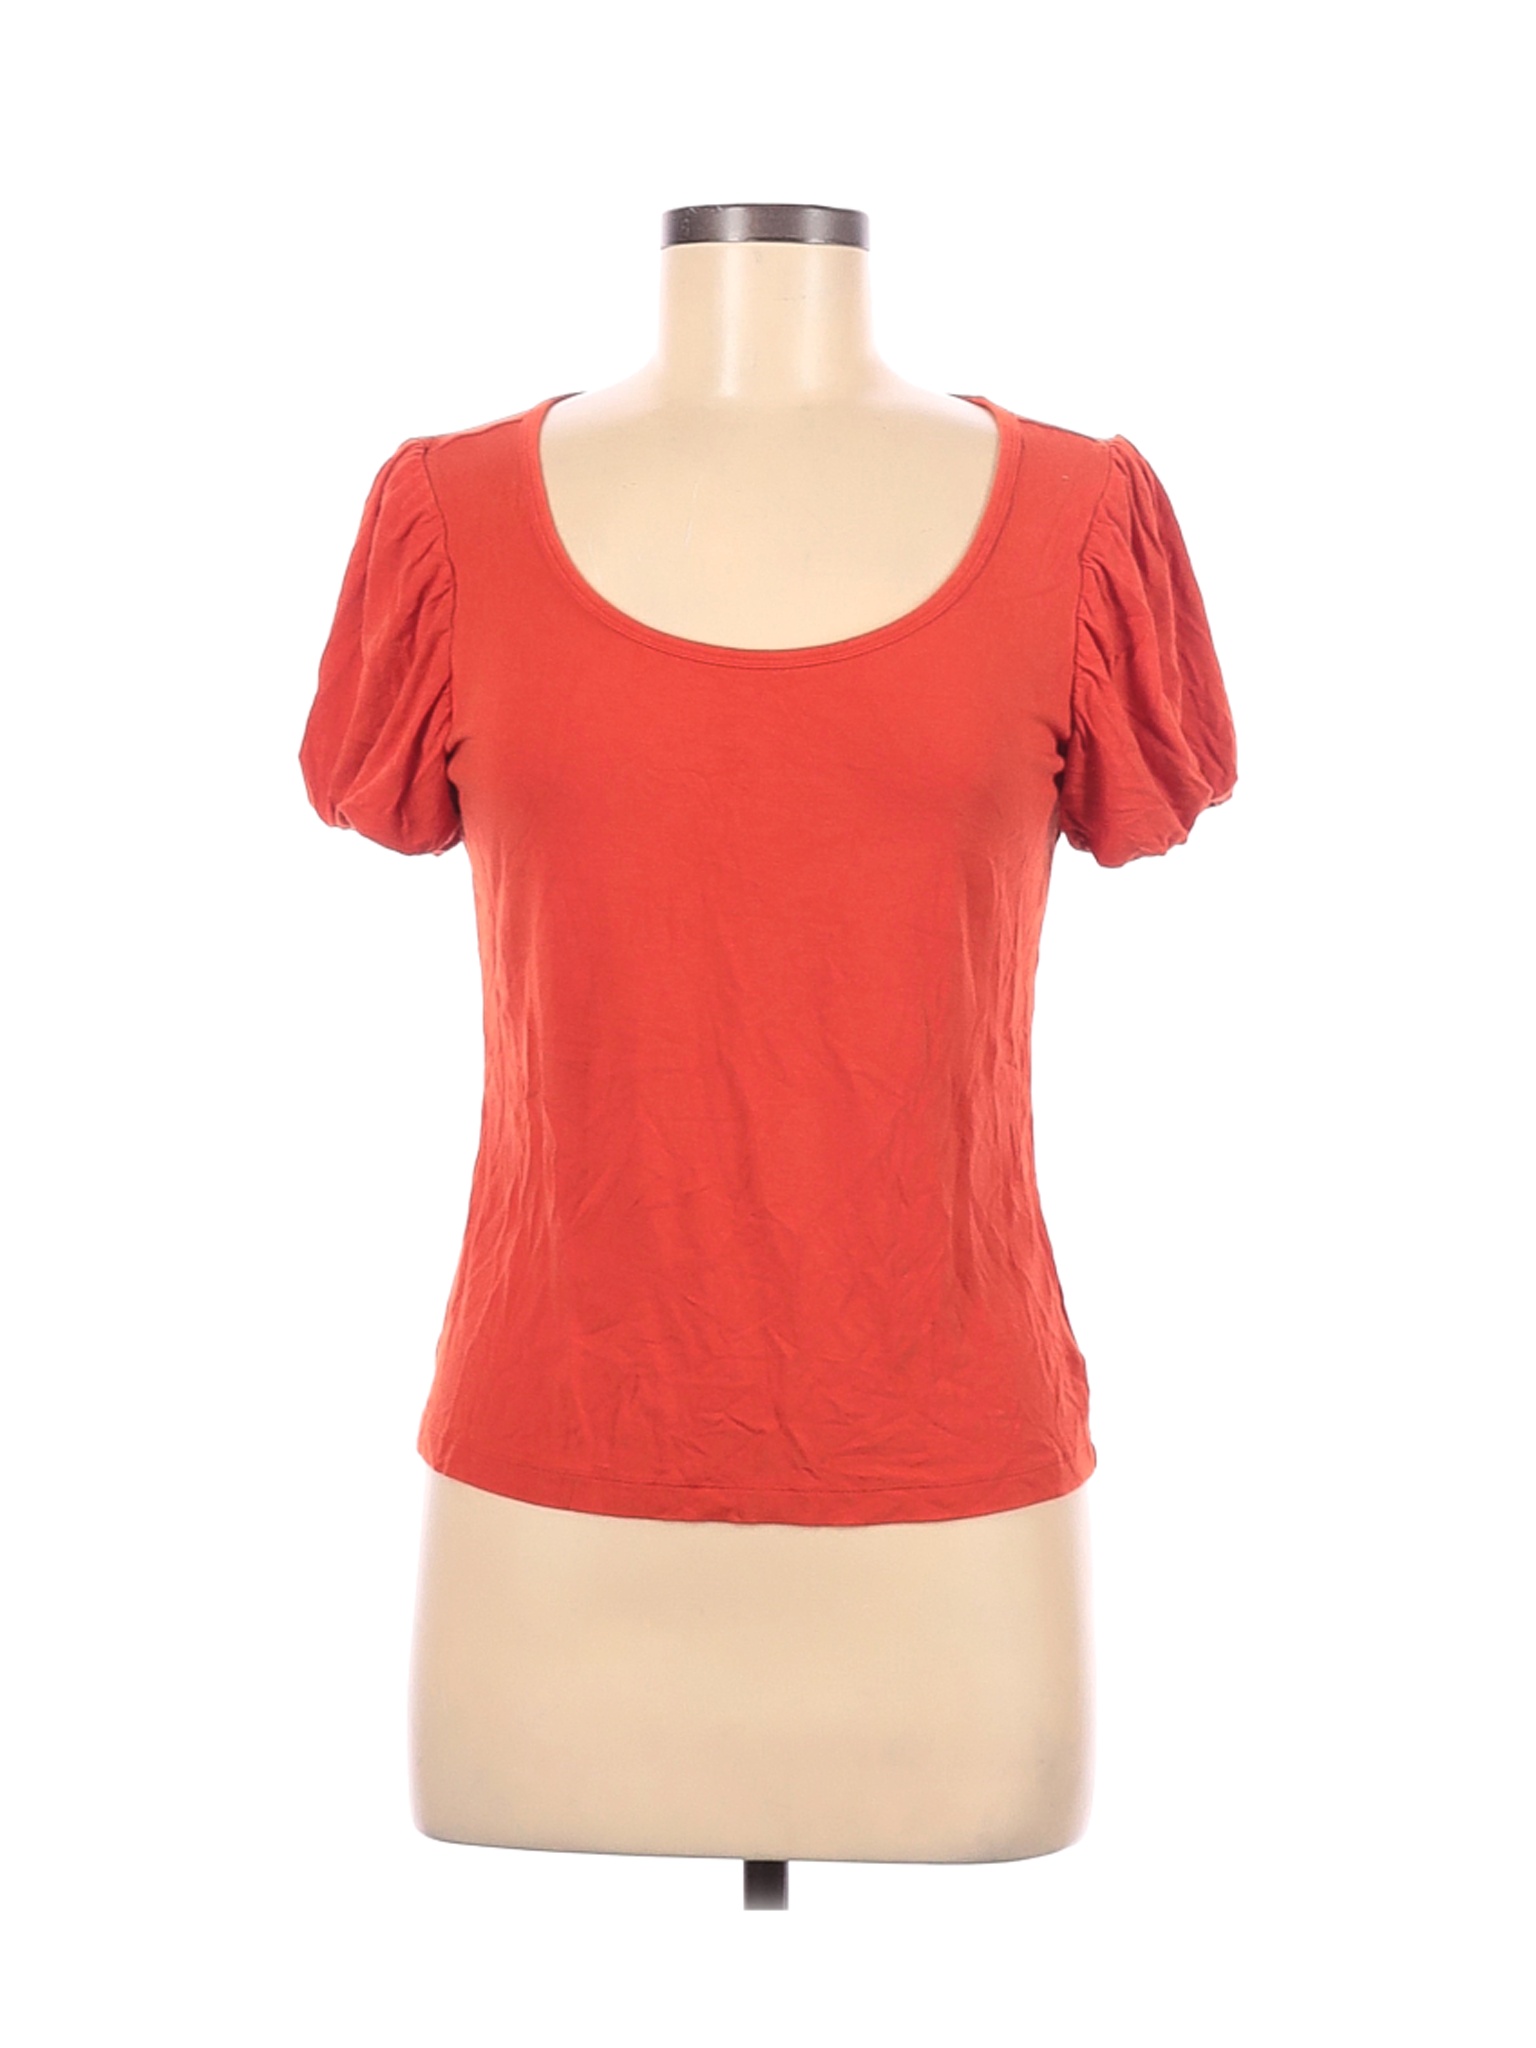 Lauren by Ralph Lauren Women Orange Short Sleeve Top M | eBay